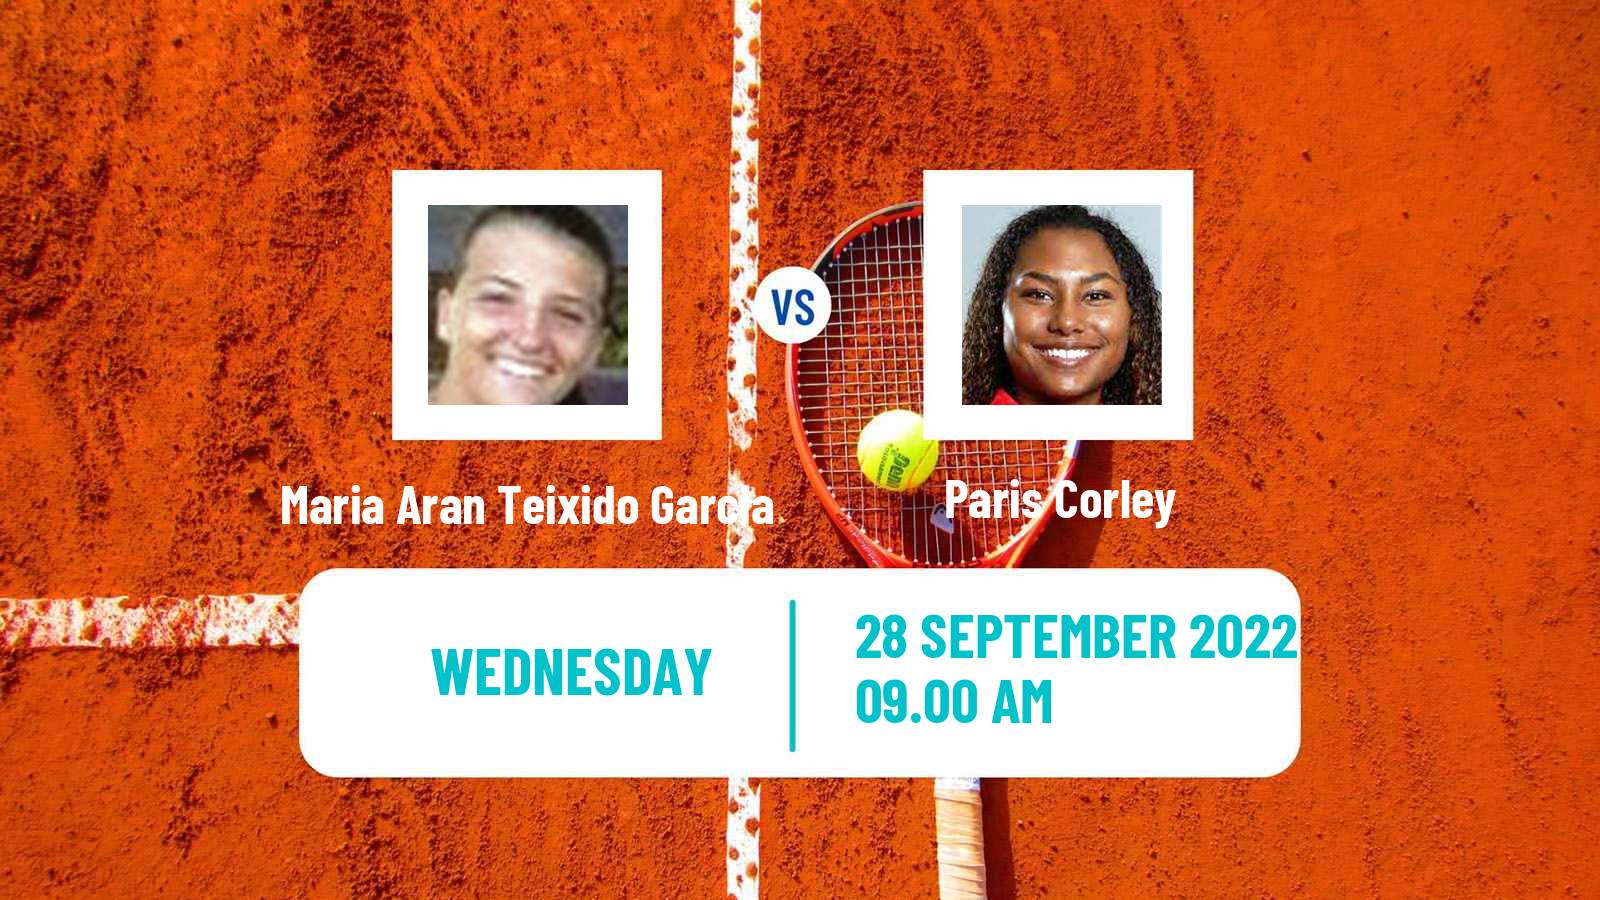 Tennis ITF Tournaments Maria Aran Teixido Garcia - Paris Corley